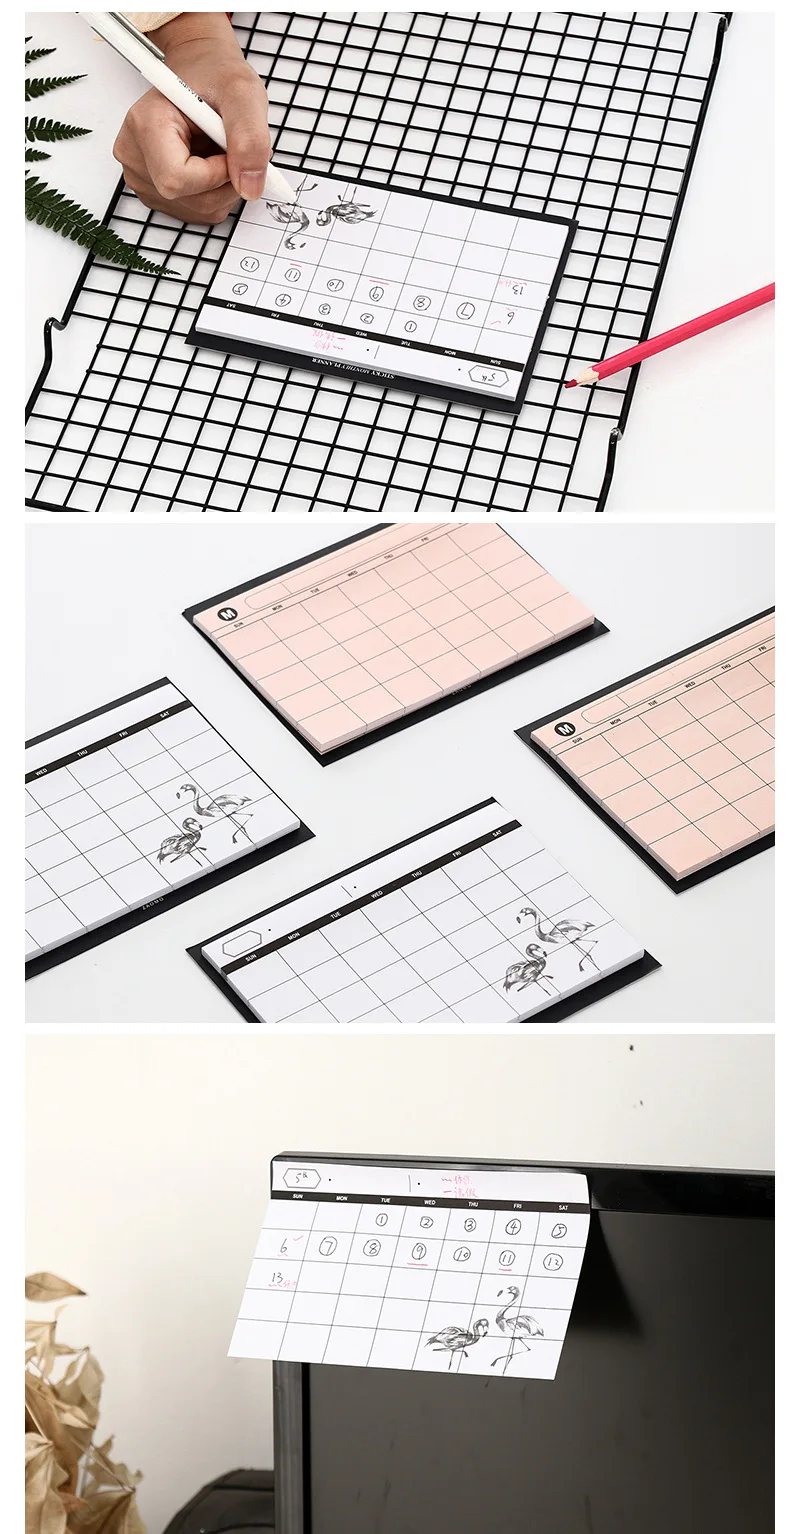 Творческий Простой desktop clendar ежемесячная план заметки Блокнот N раз доски памятки этикетки Офис поставка школы papeleria